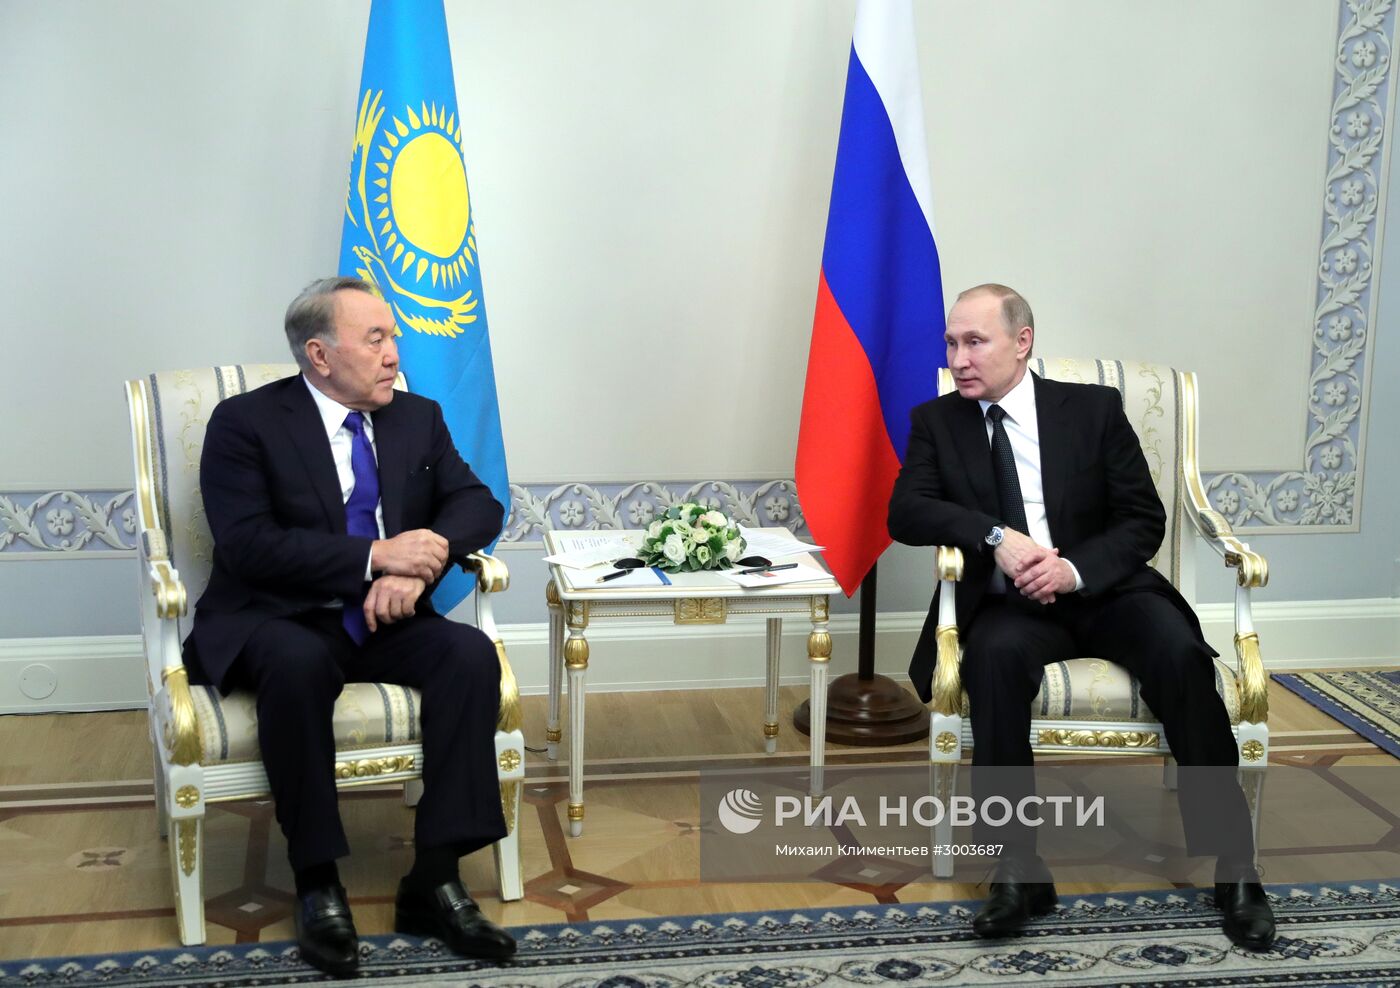 Президент РФ В. Путин принимает участие в заседании ВЕЭС и сессии Совета коллективной безопасности ОДКБ в Санкт-Петербурге